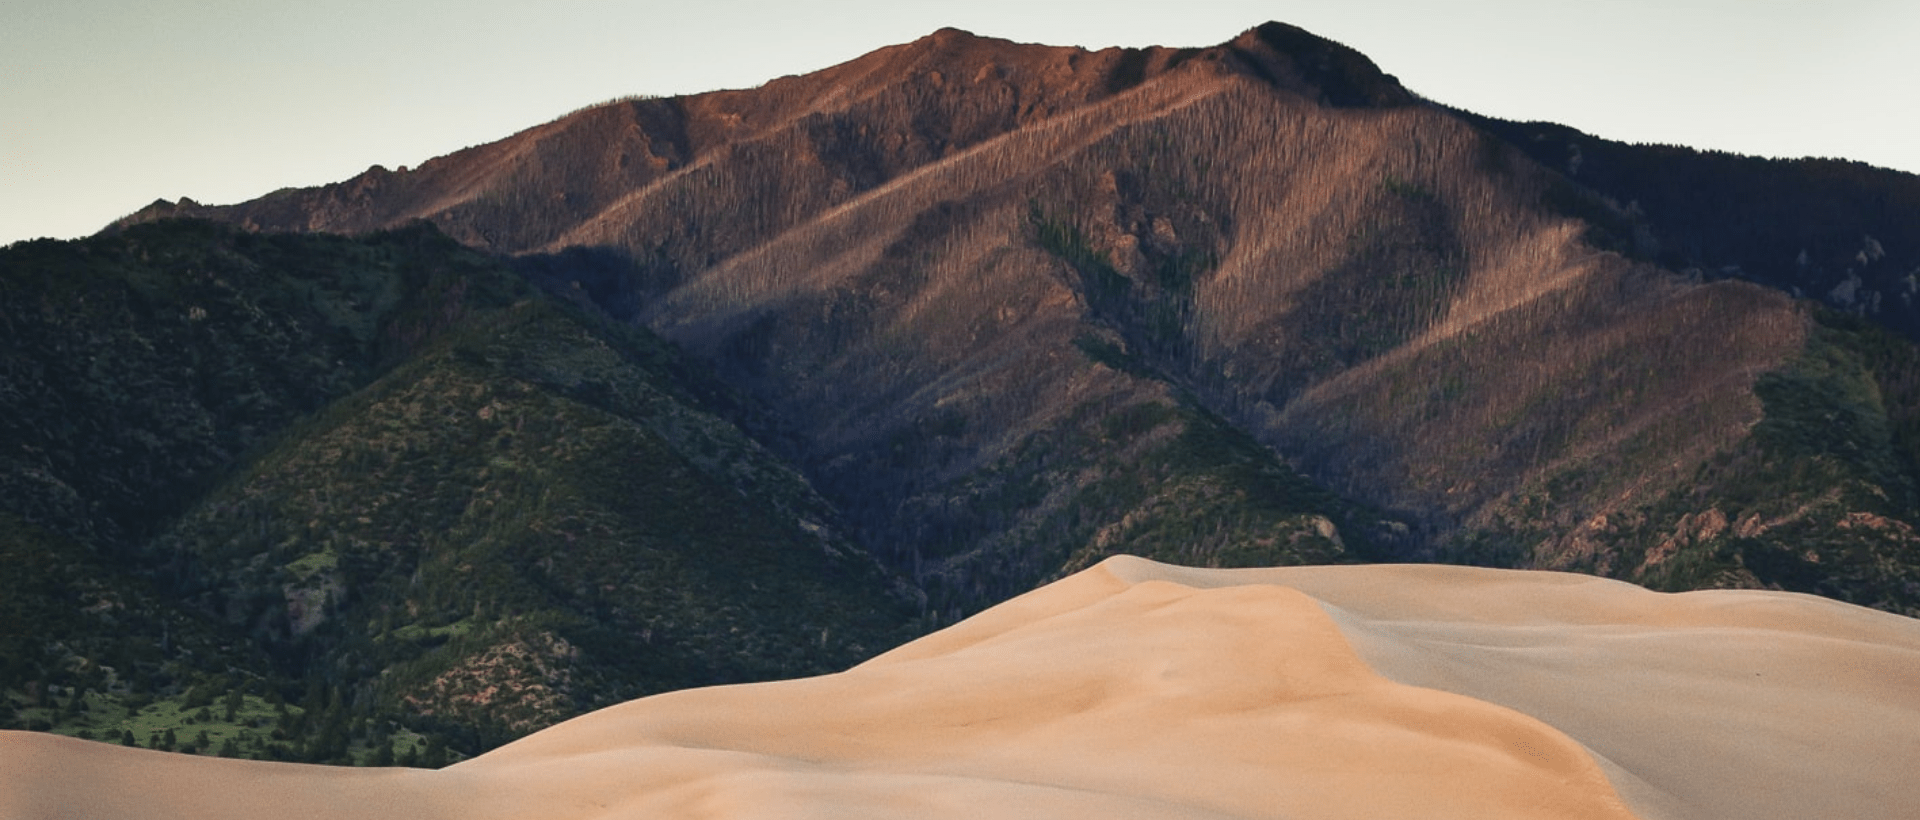 Sand und Wüstenlandschaft Sinnbildlich für angenehme Farben, 3D Effekt und organische Formen